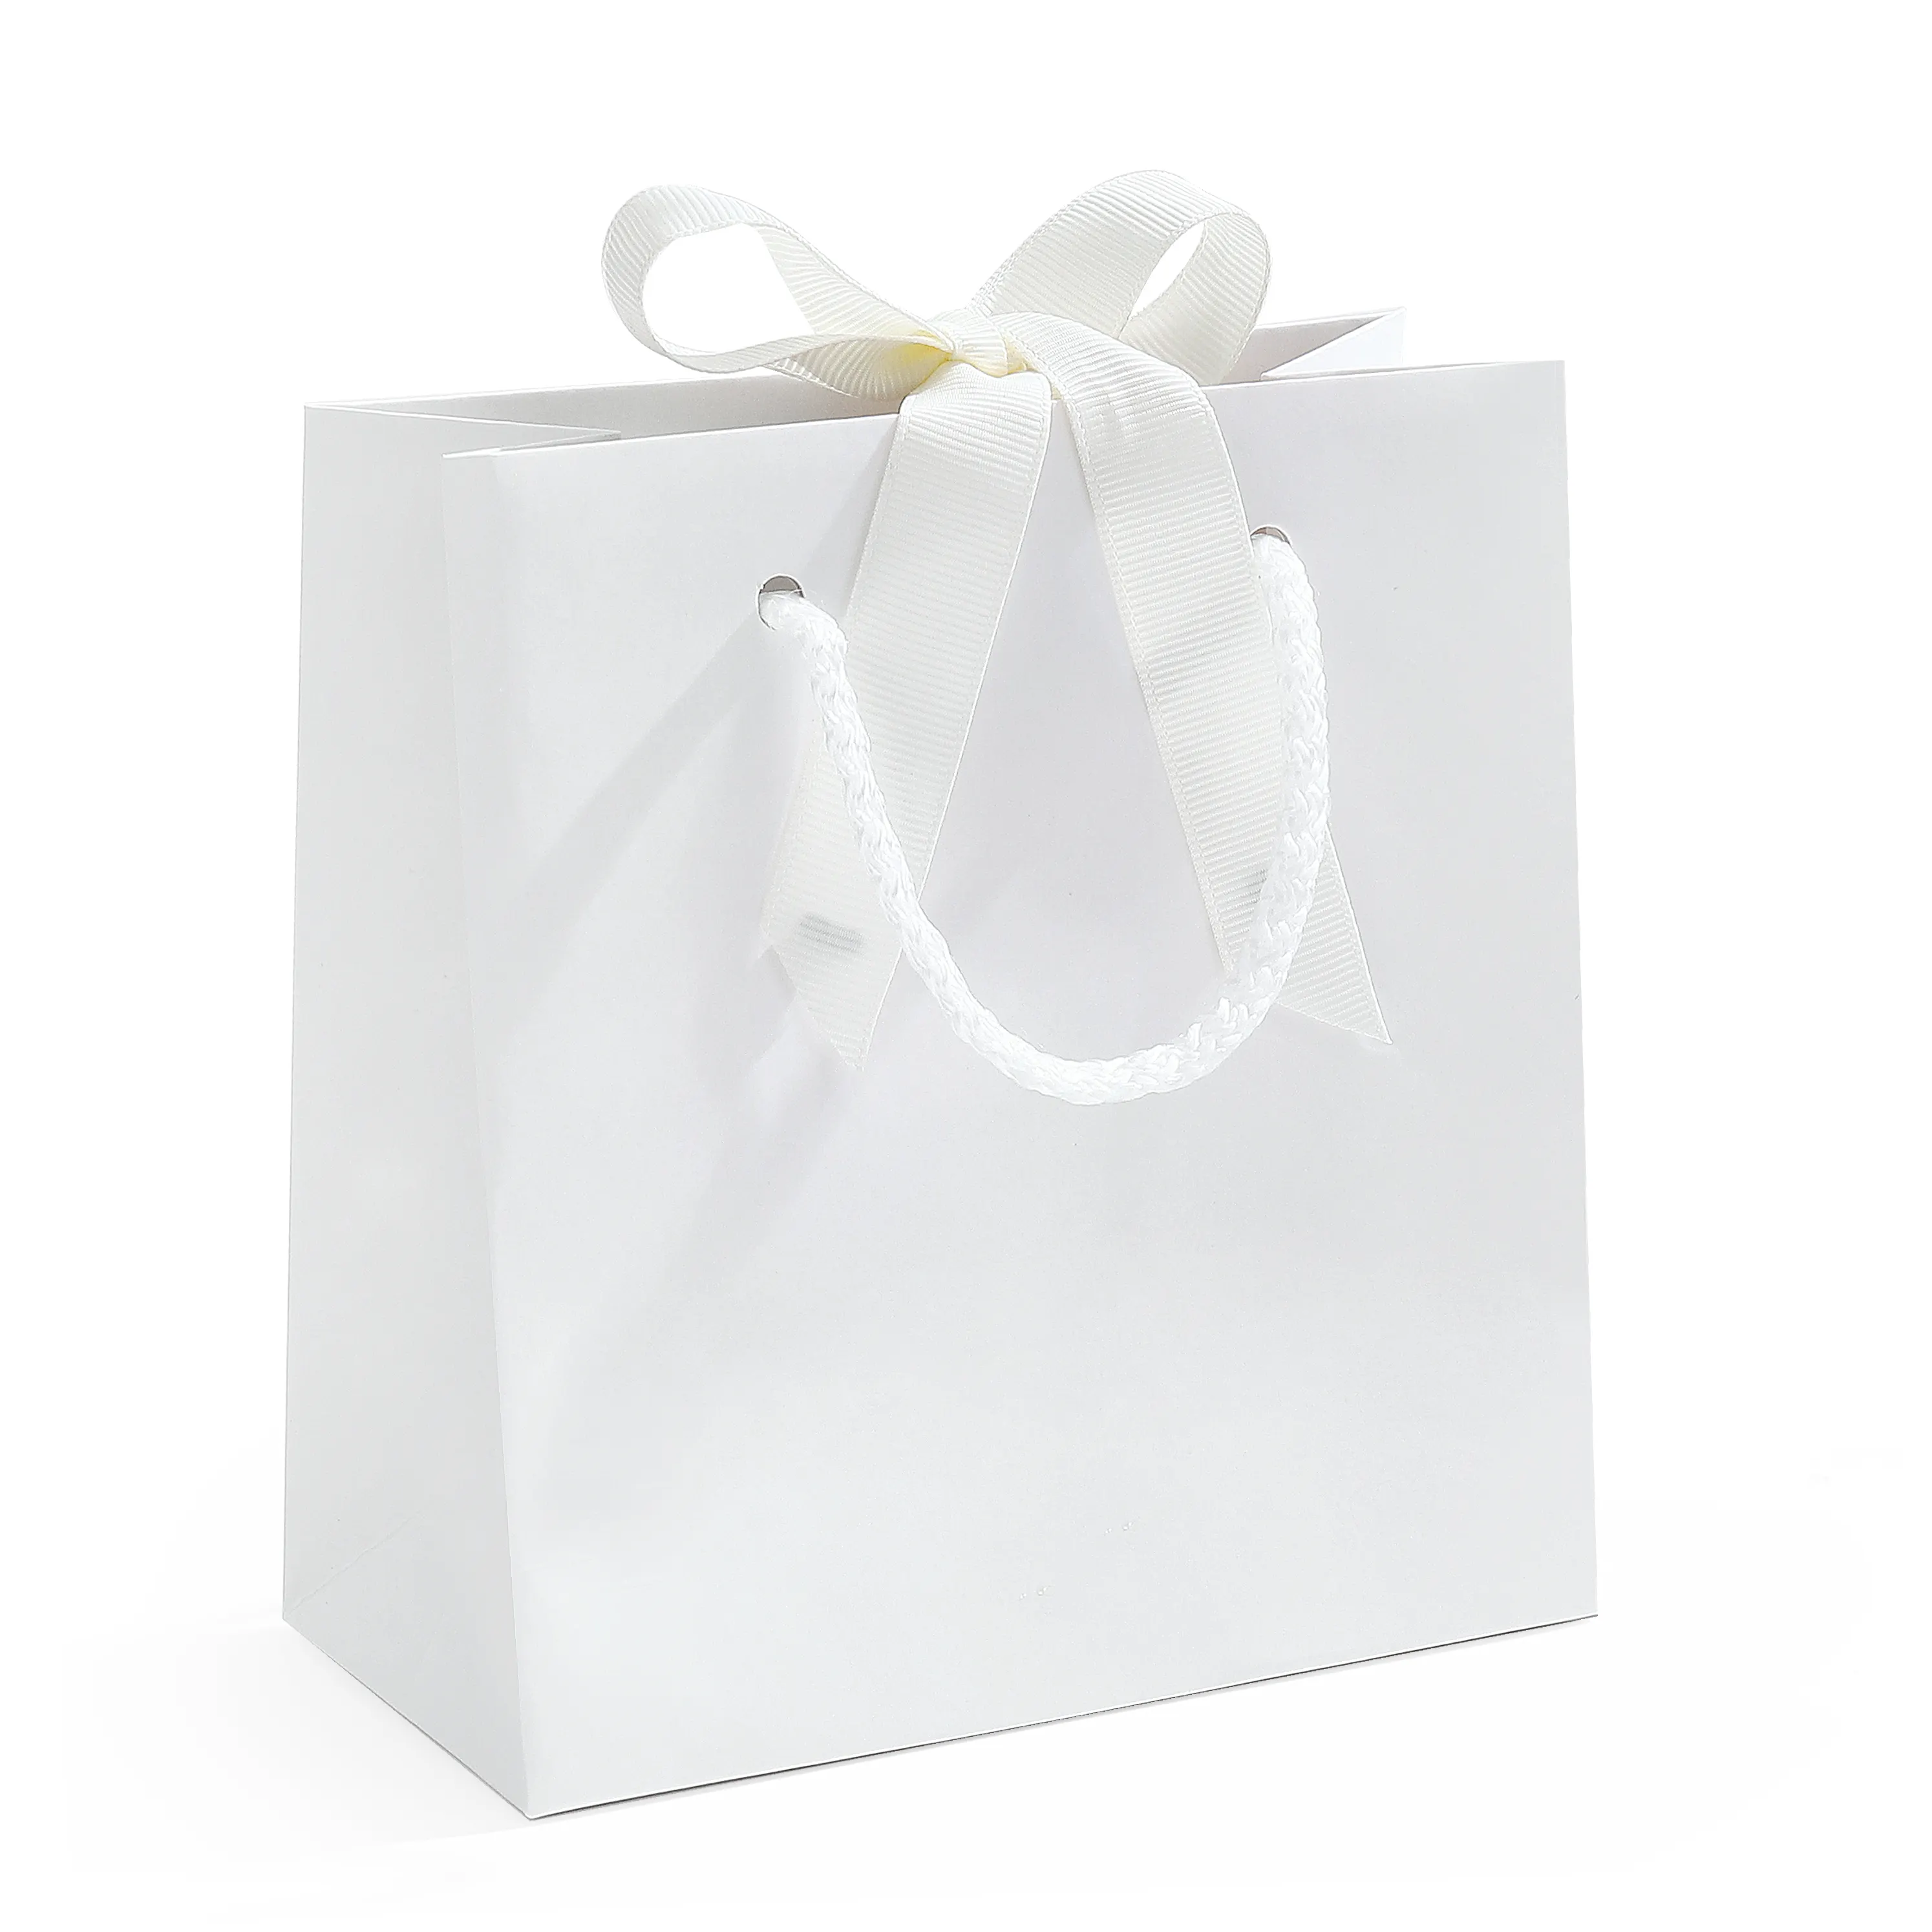 Spot proteção ambiental papel sacos reutilizáveis em branco bolsas branco amarrado presente embalagem atacado compras papel sacos